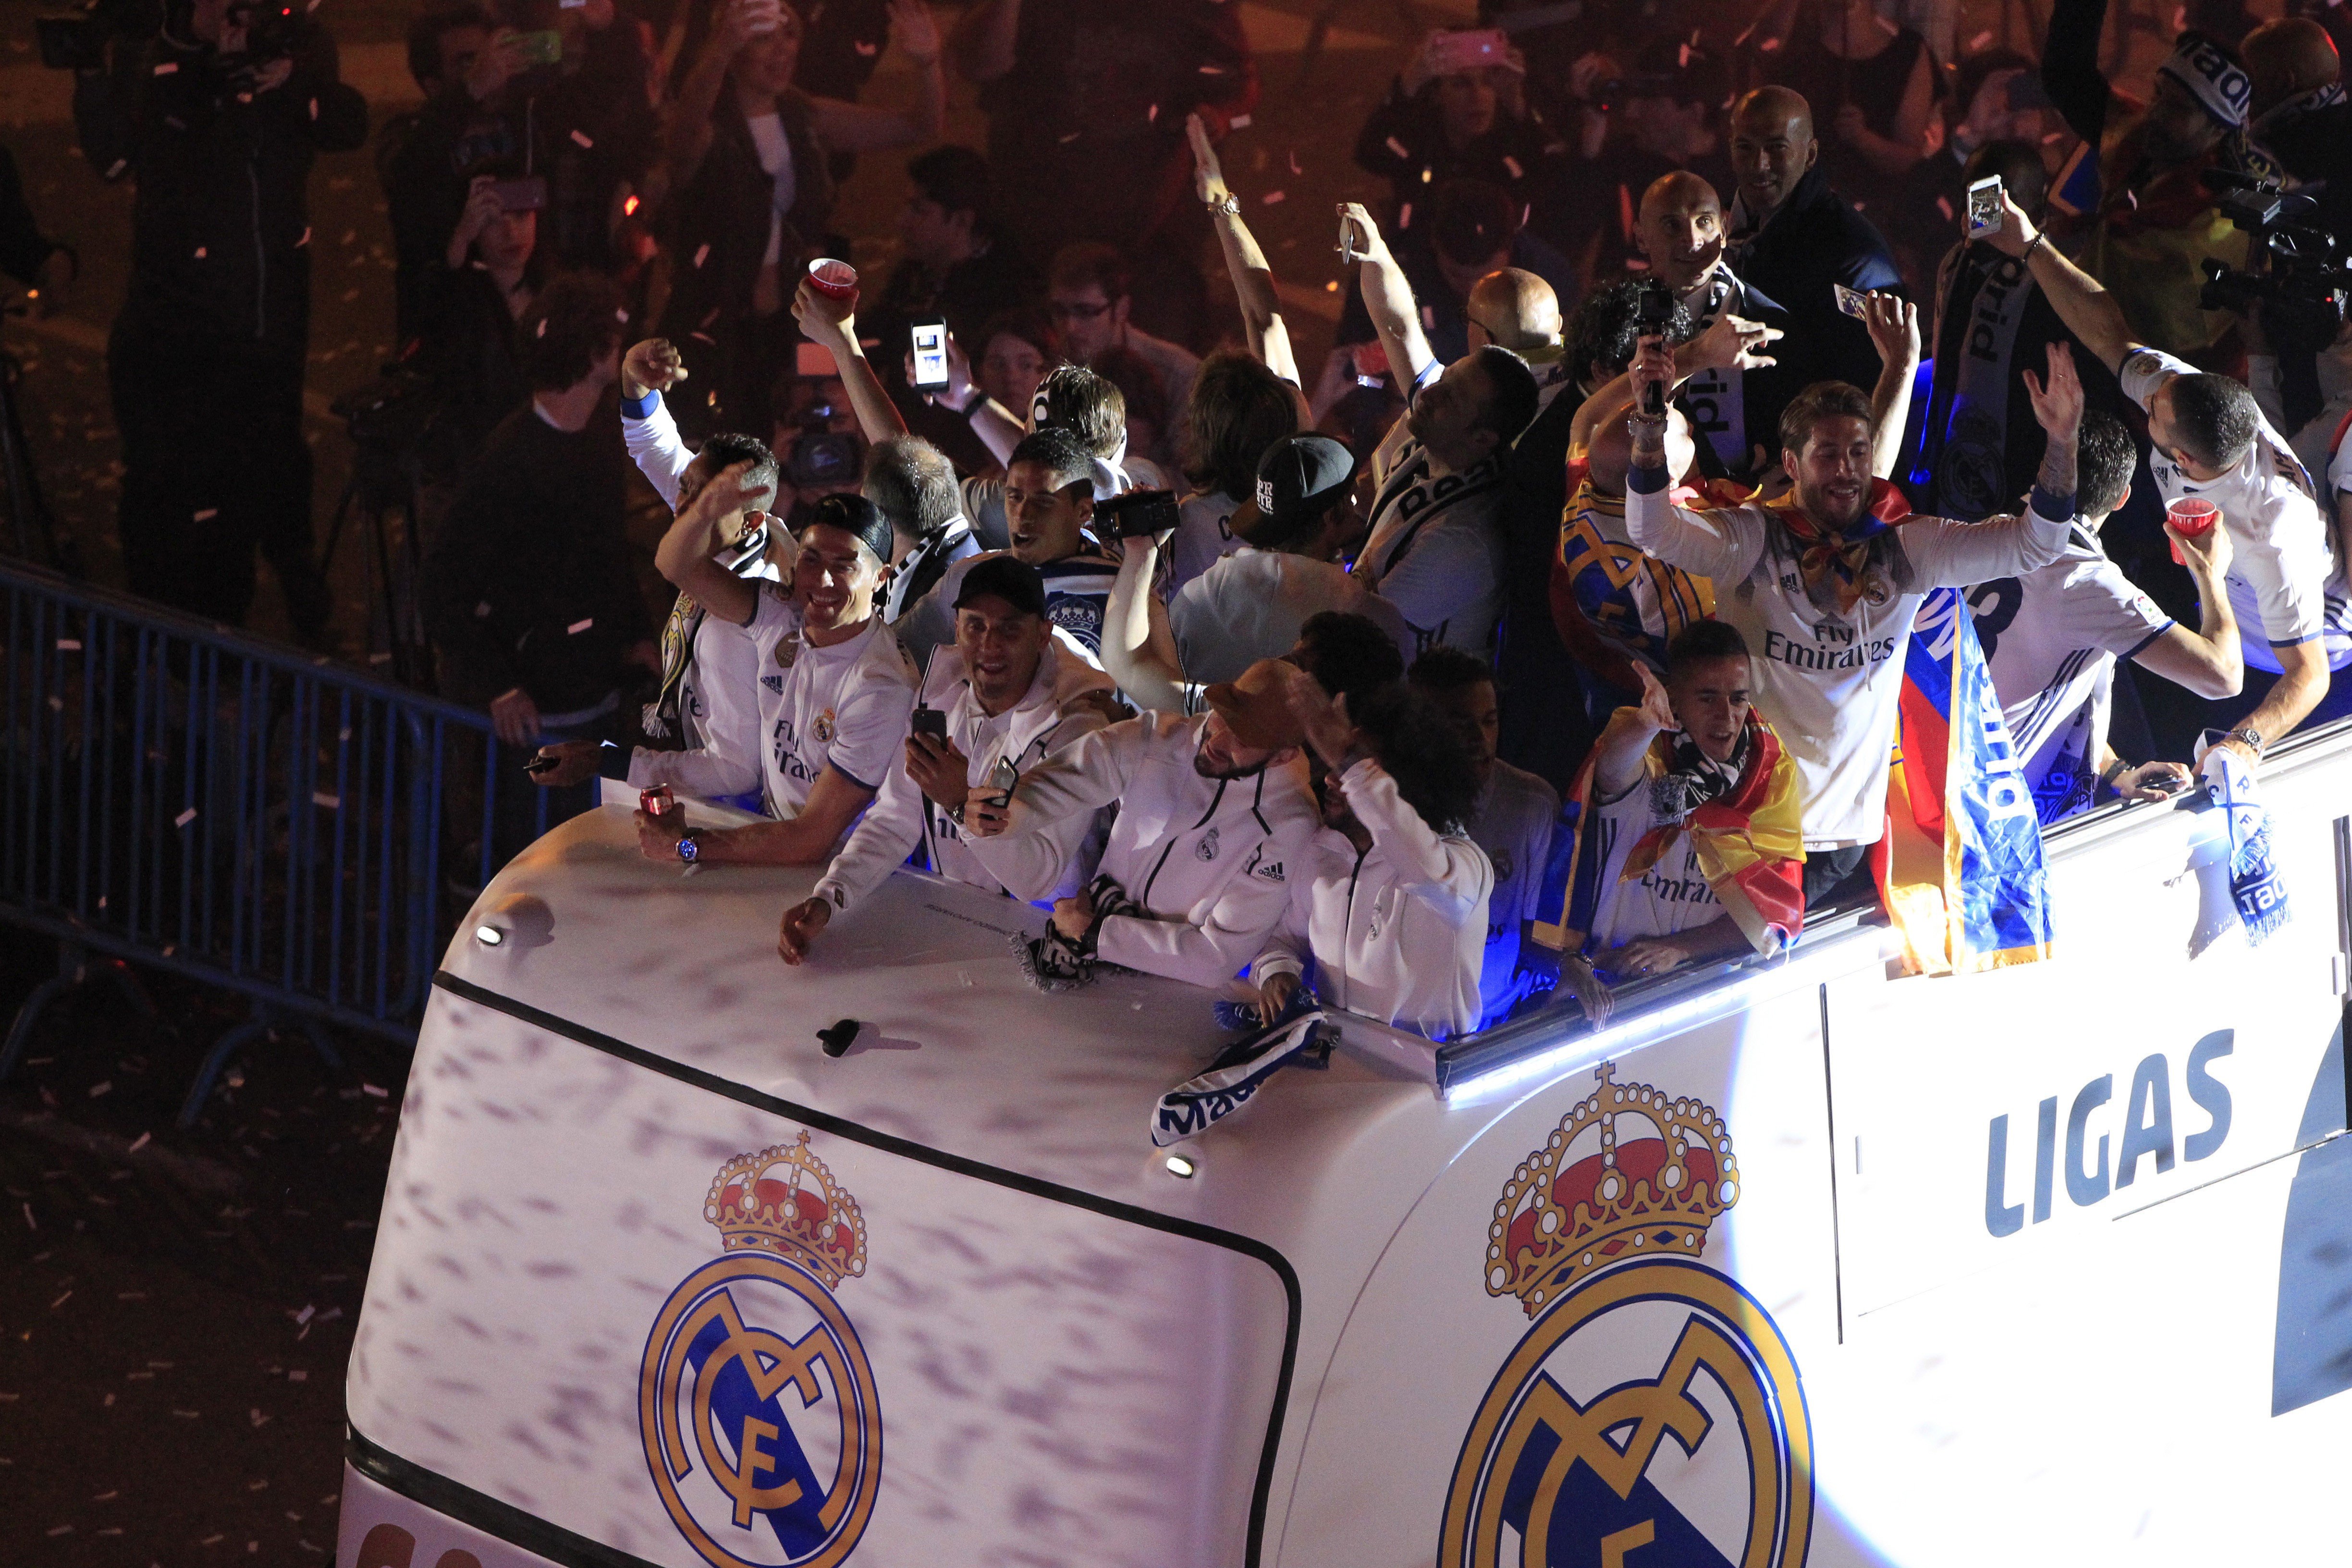 Els jugadors del Madrid celebrant la Lliga: "Piqué, cabrón, saluda al campeón"